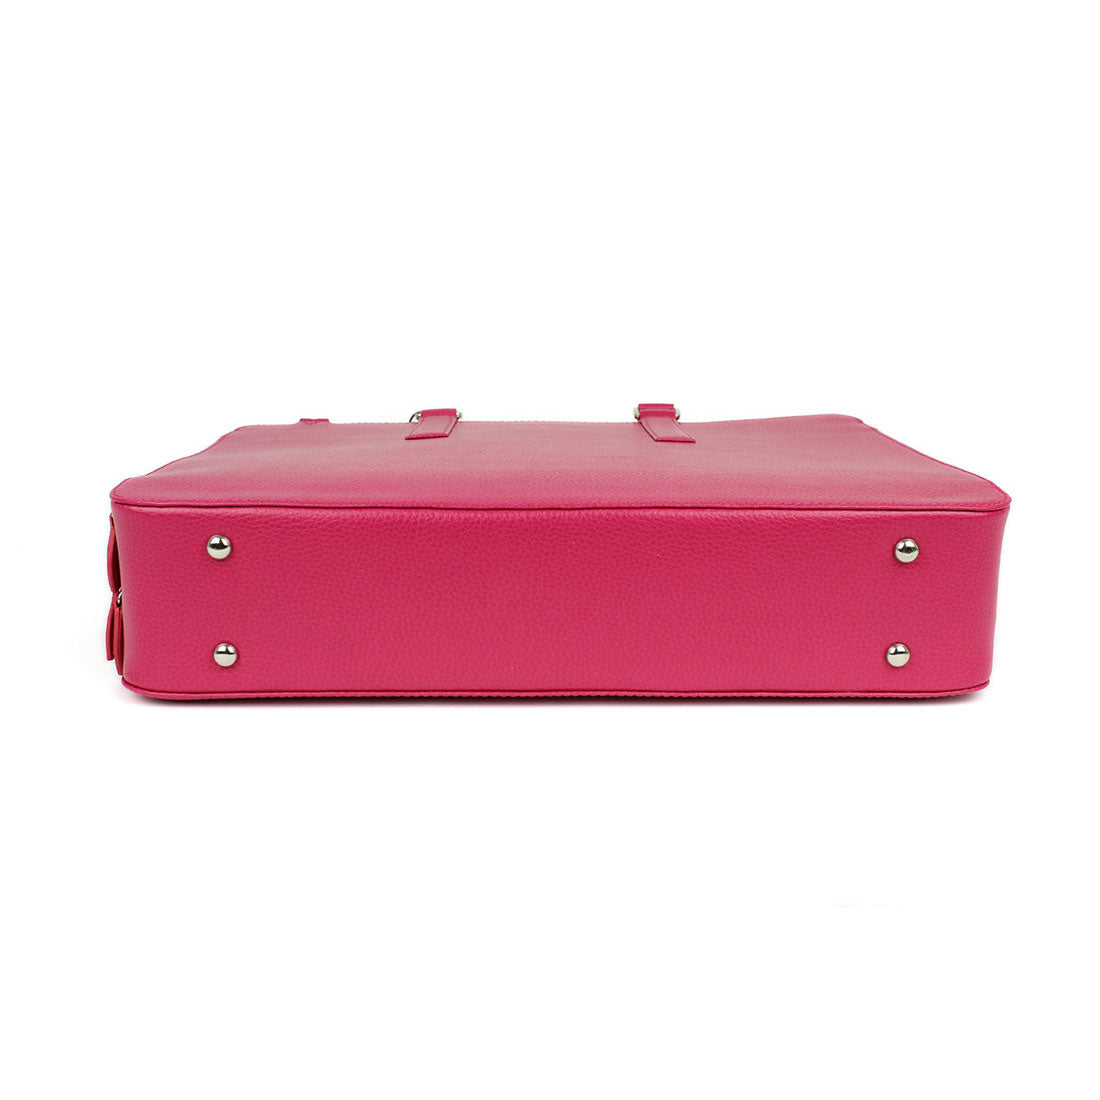 Deluxe Laptop Briefcase - Fuchsia#color_laurige-fuchsia